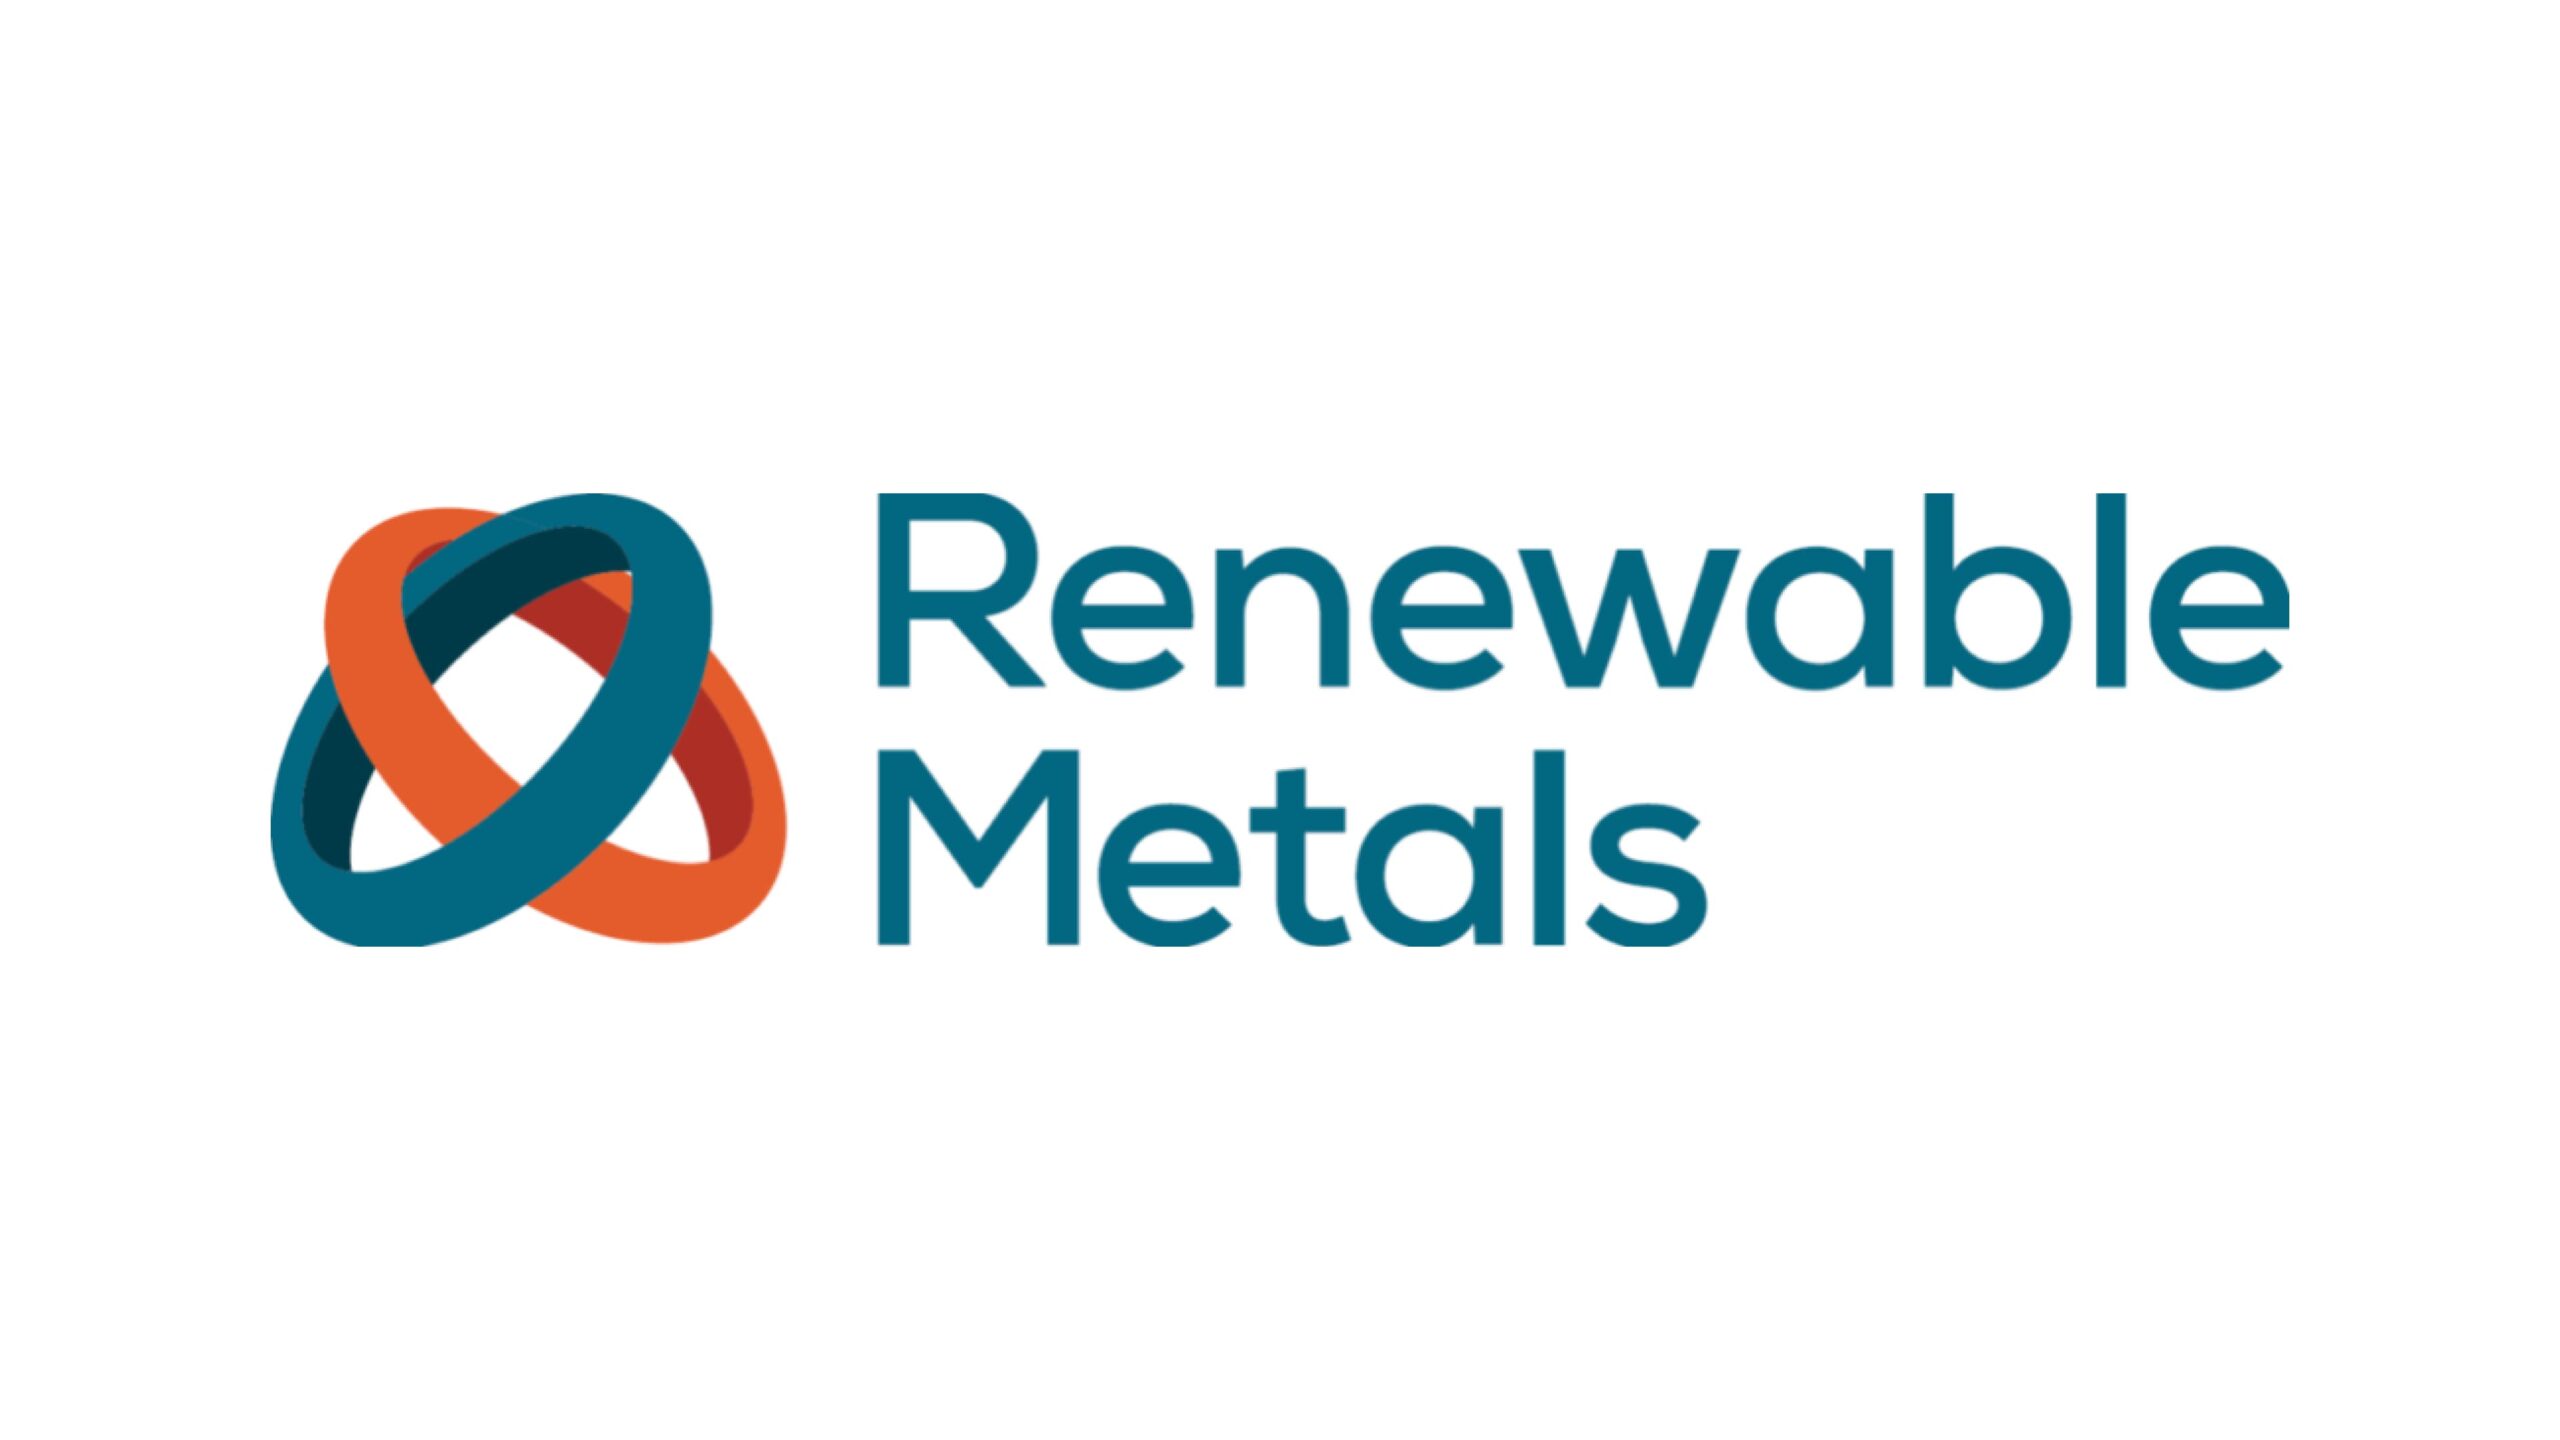 リサイクル技術を拡大するため、Renewable Metalsが800万ドルを調達